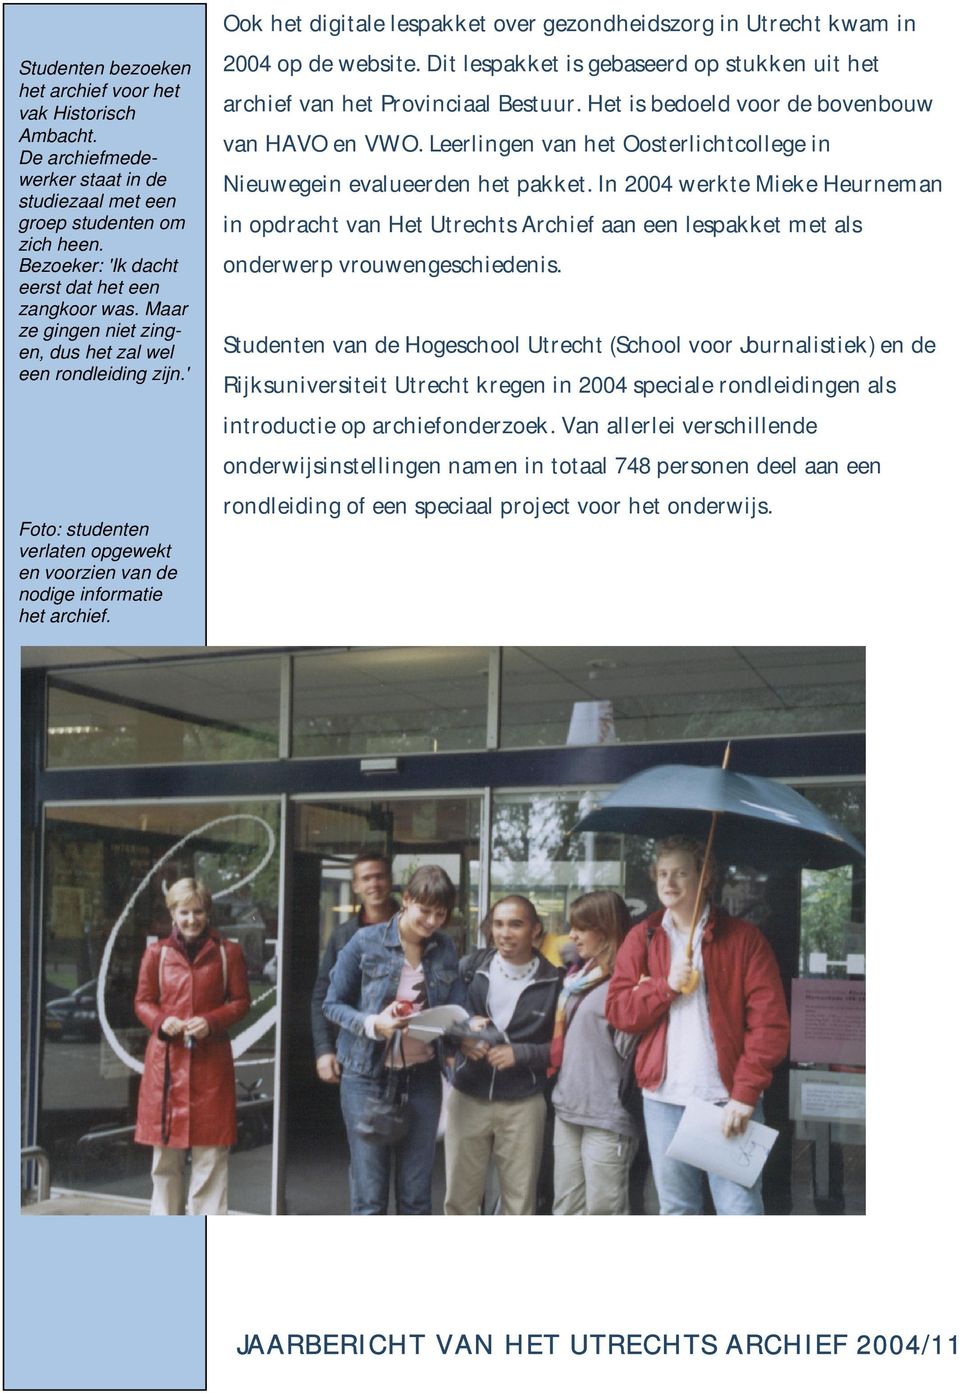 Ook het digitale lespakket over gezondheidszorg in Utrecht kwam in 2004 op de website. Dit lespakket is gebaseerd op stukken uit het archief van het Provinciaal Bestuur.